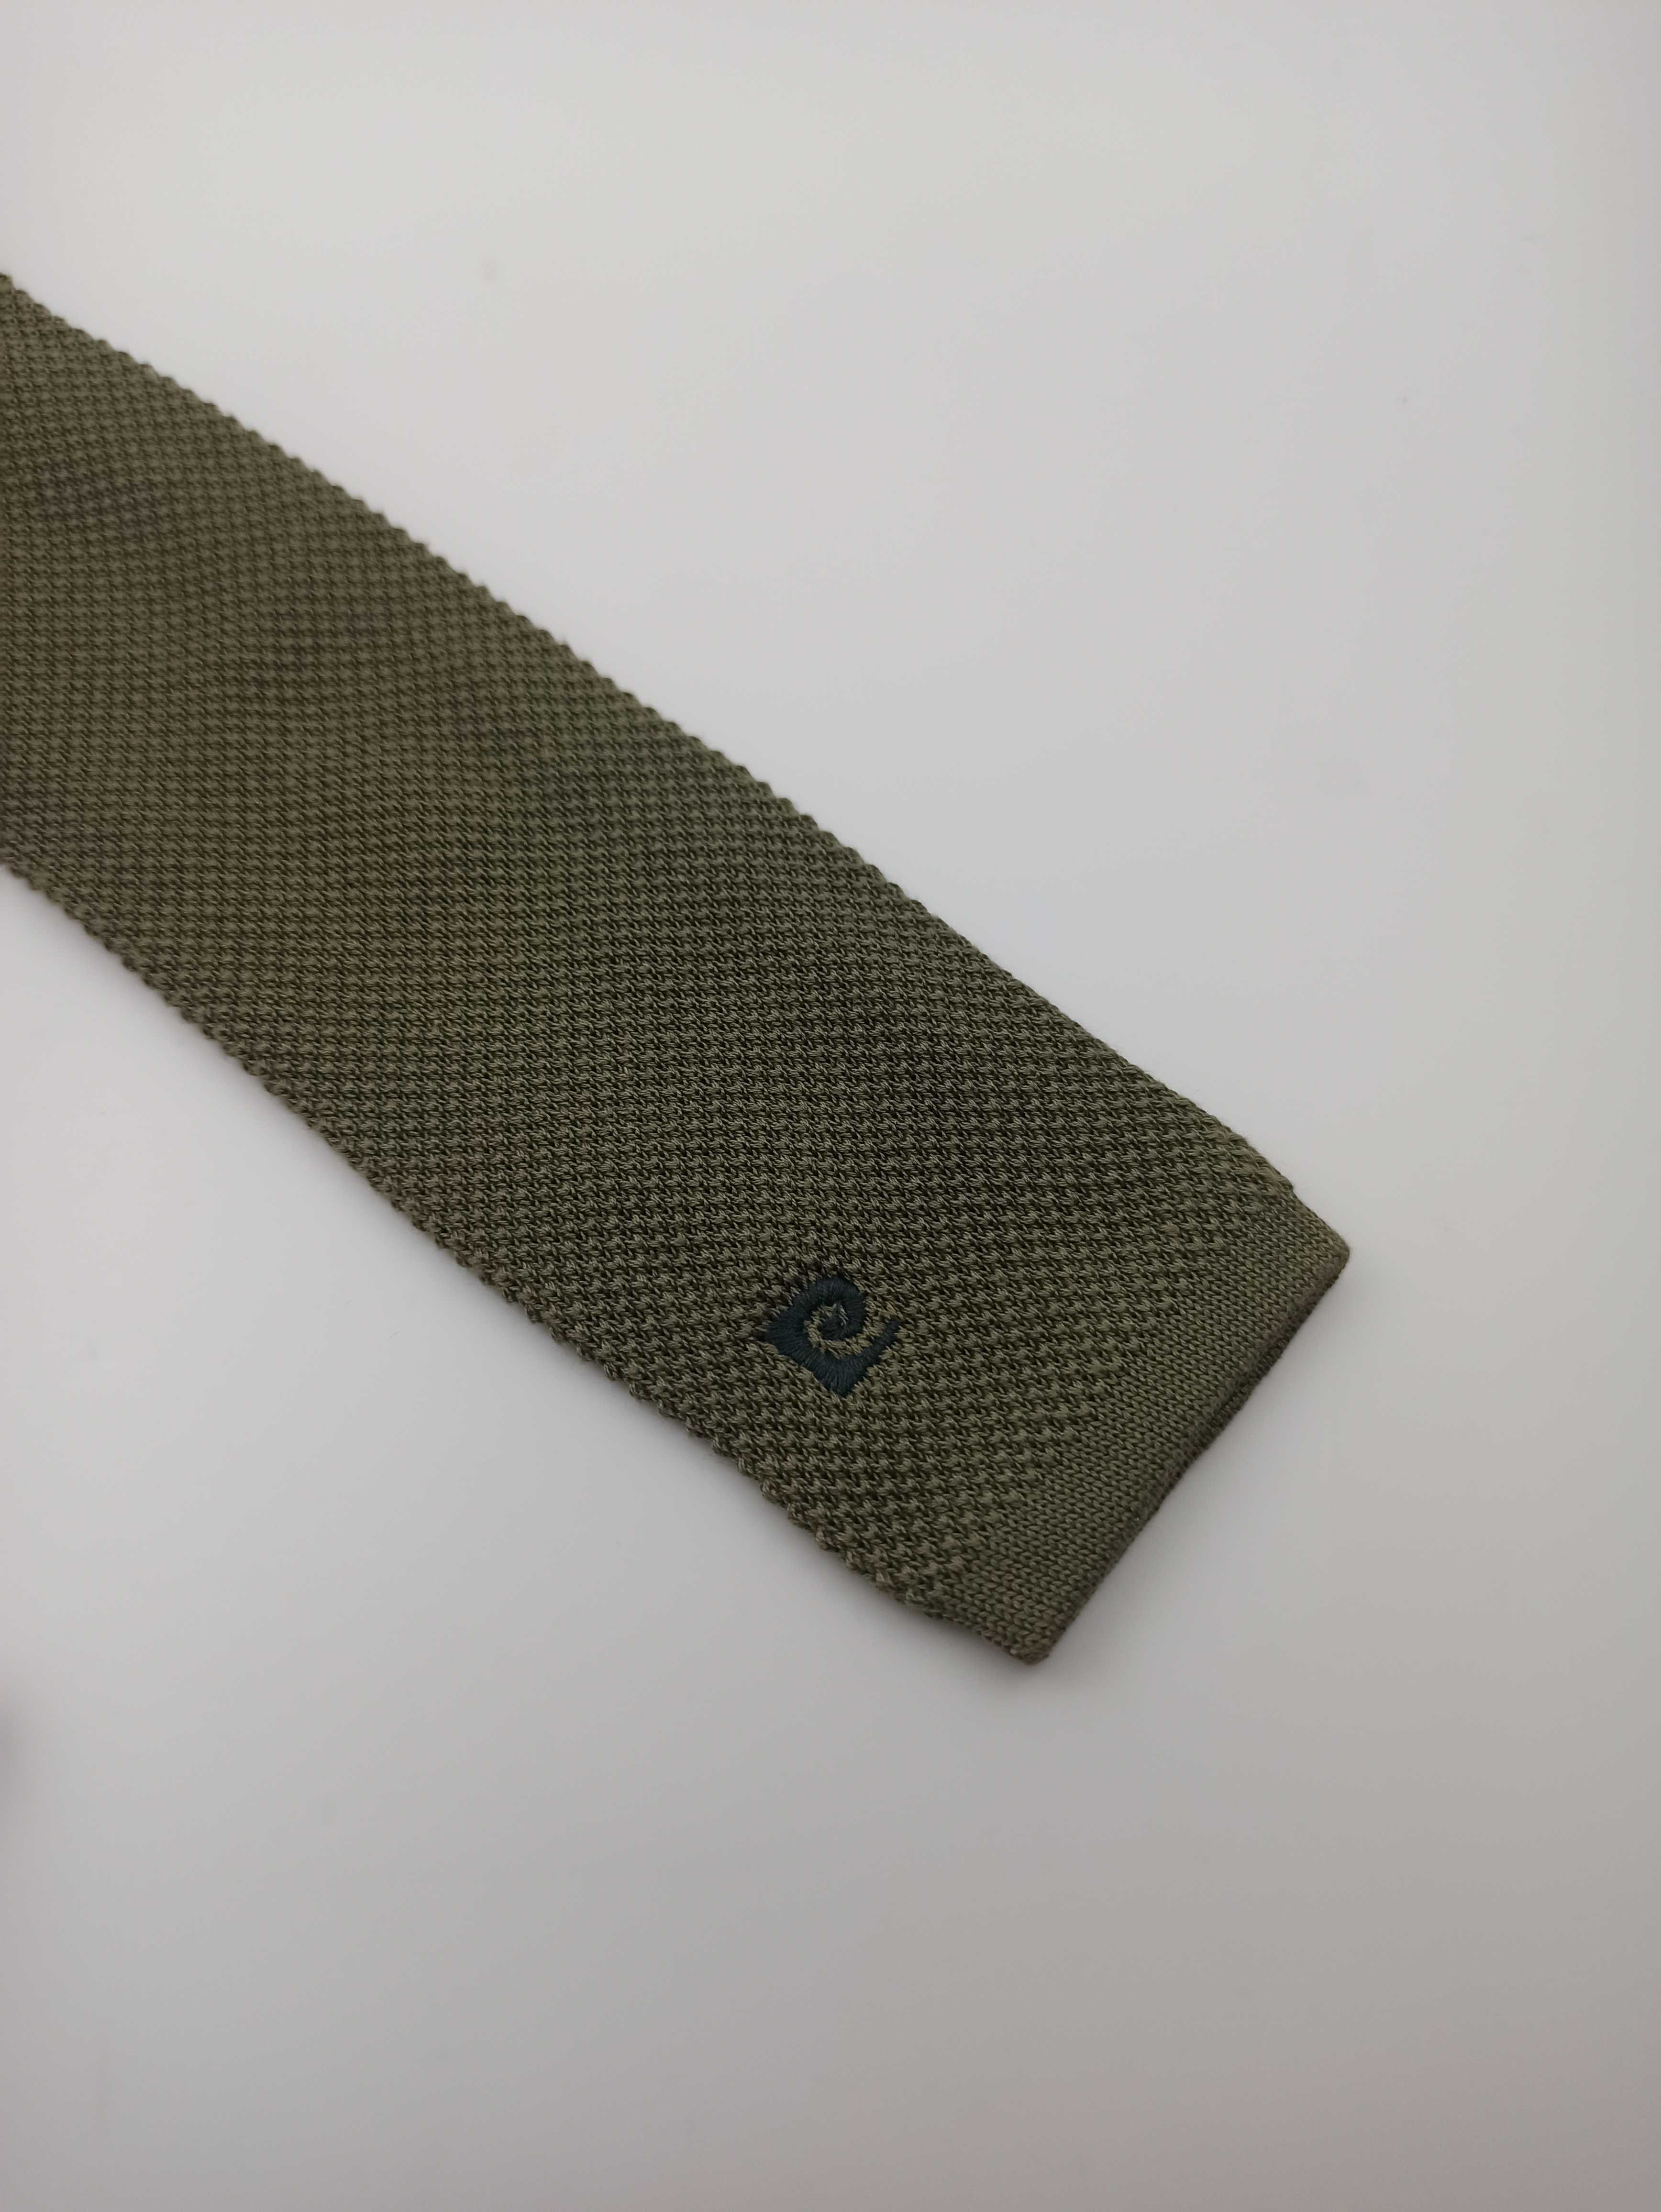 Pierre Cardin bawełniany krawat knit zielony pc06